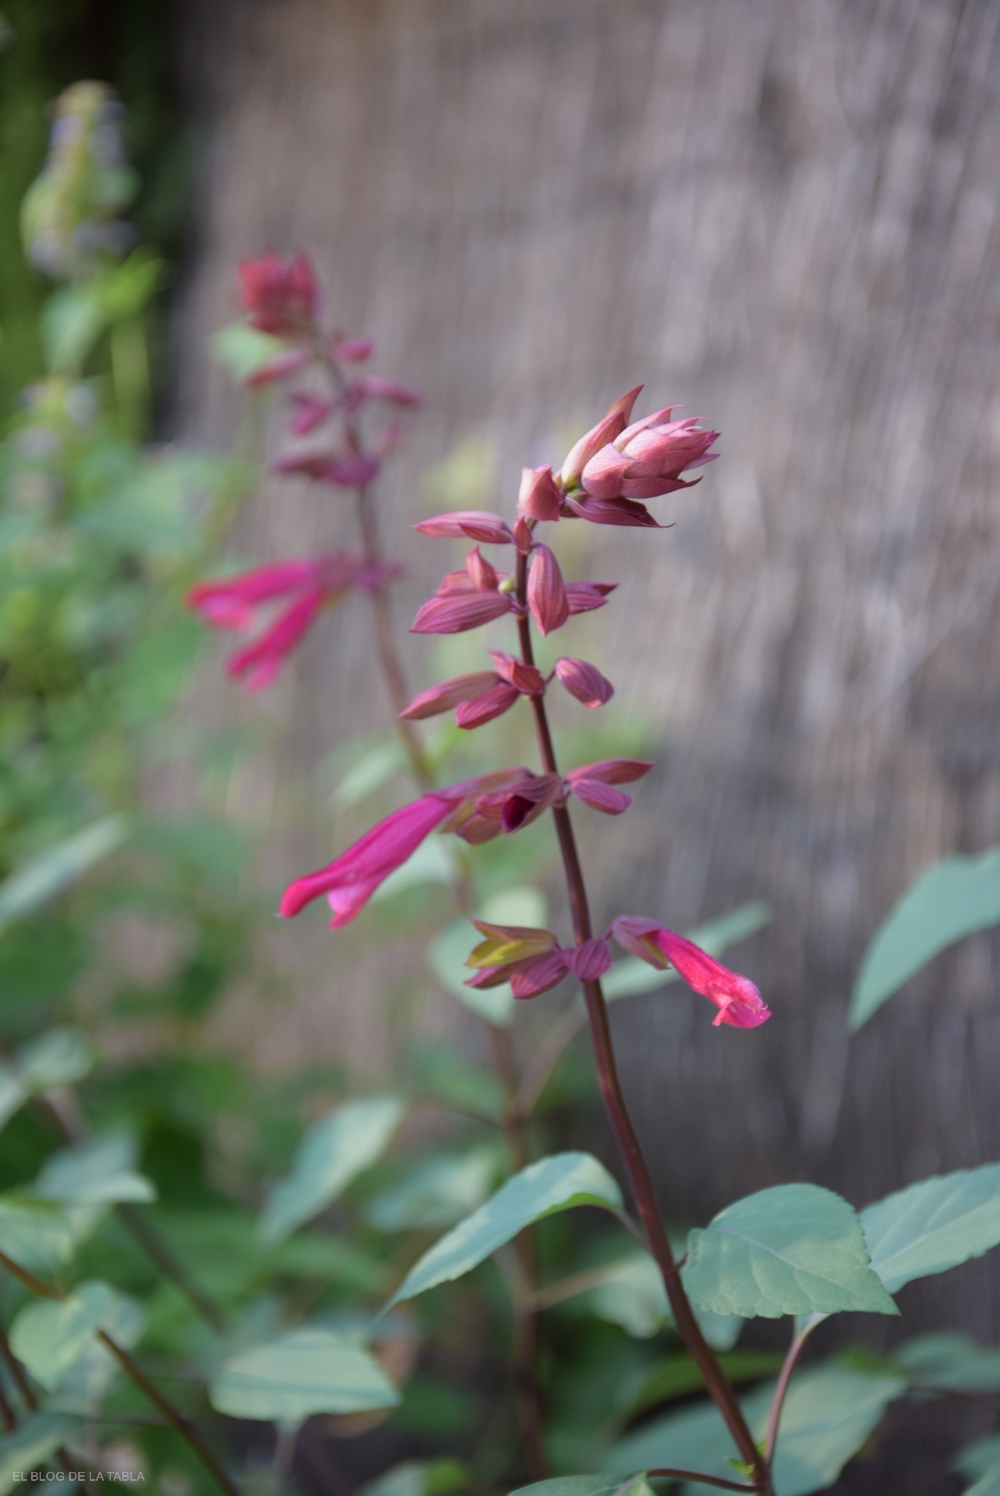 Salvia ‘Love and Wishes’, una salvia de porte erguido, con prolongada y profusa floración en tonos color púrpura rojizo y burdeos, 